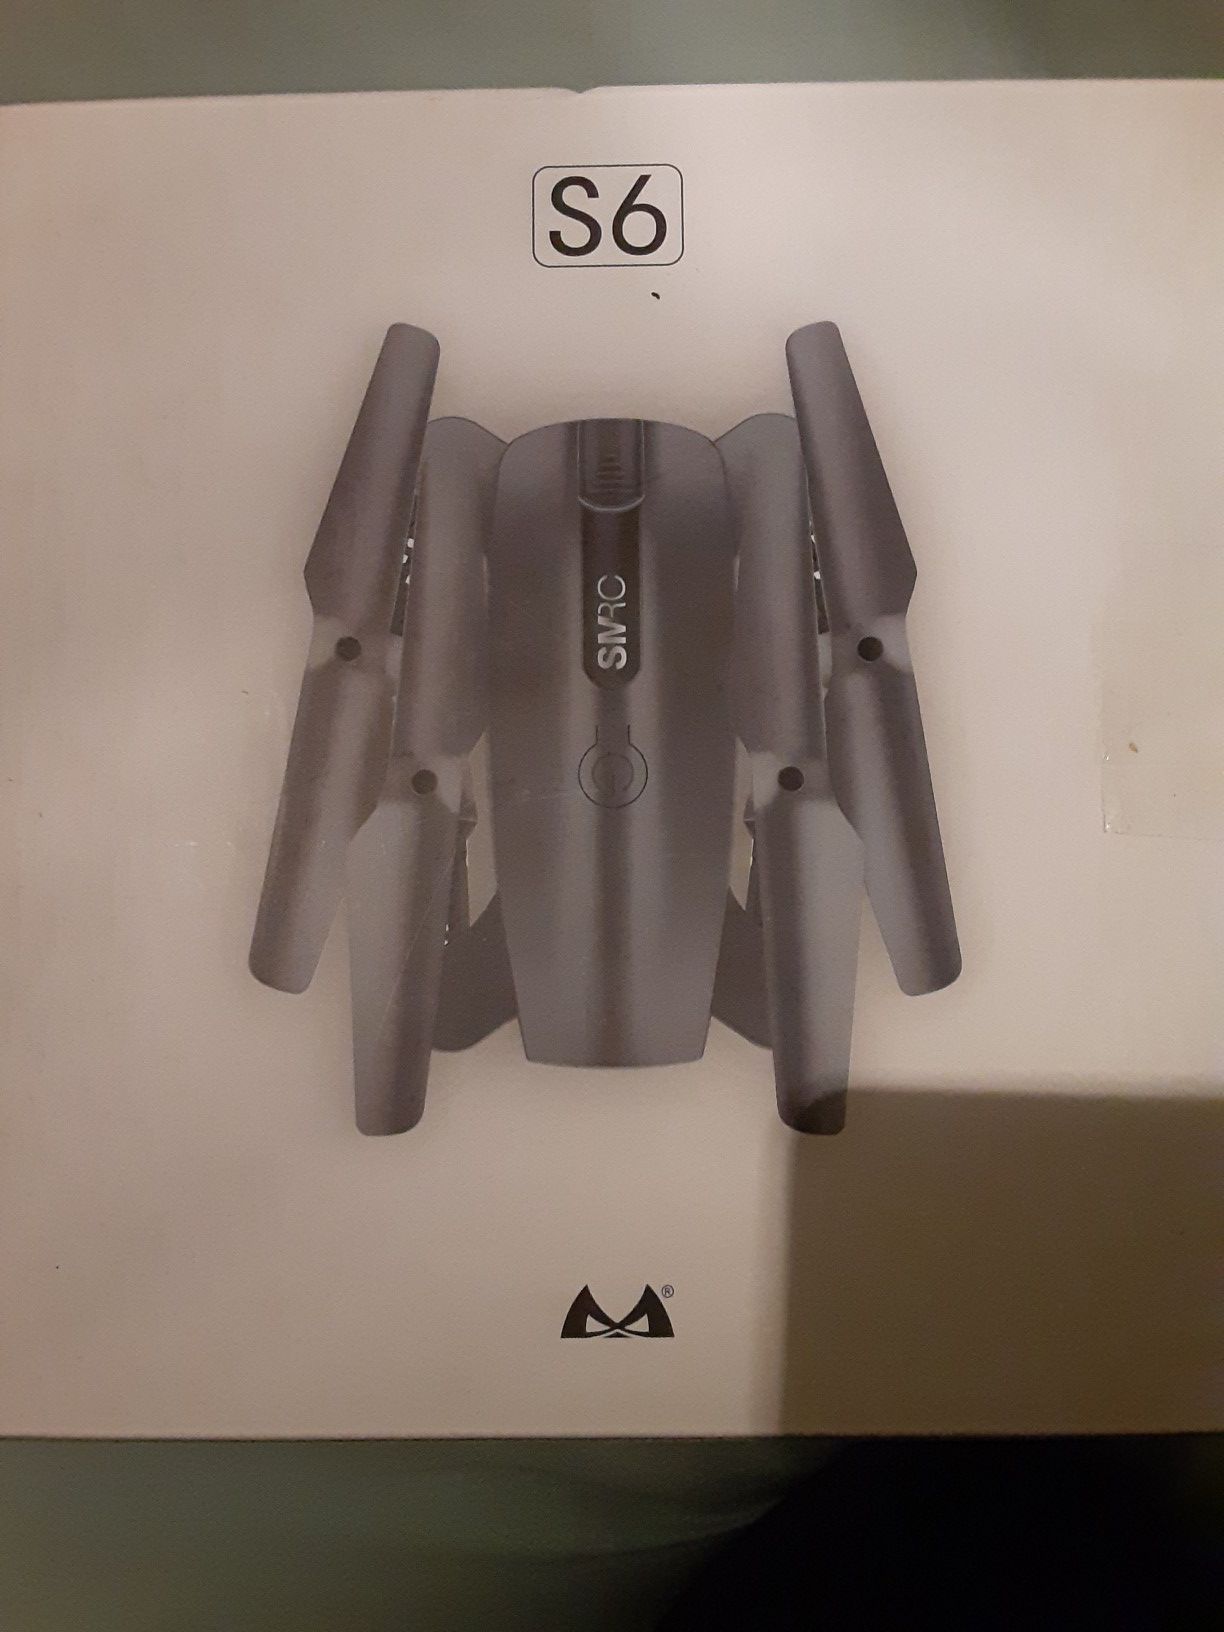 Smrc s6 drone